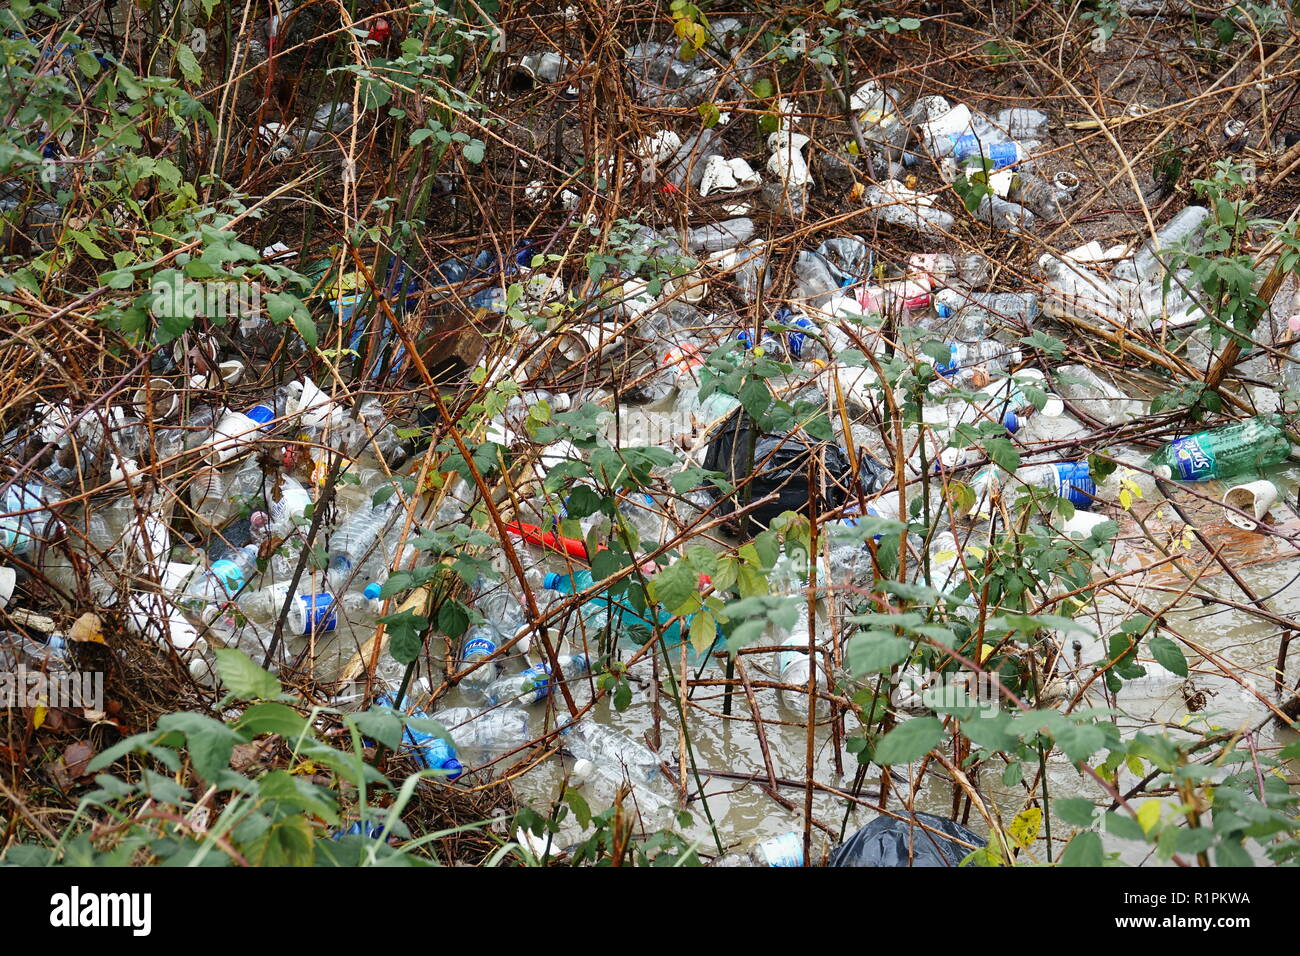 Milano, Italia - Novembre 2017: inquinamento ambientale di non-della frazione biodegradabile dei rifiuti abbandonati in un parco della città Foto Stock